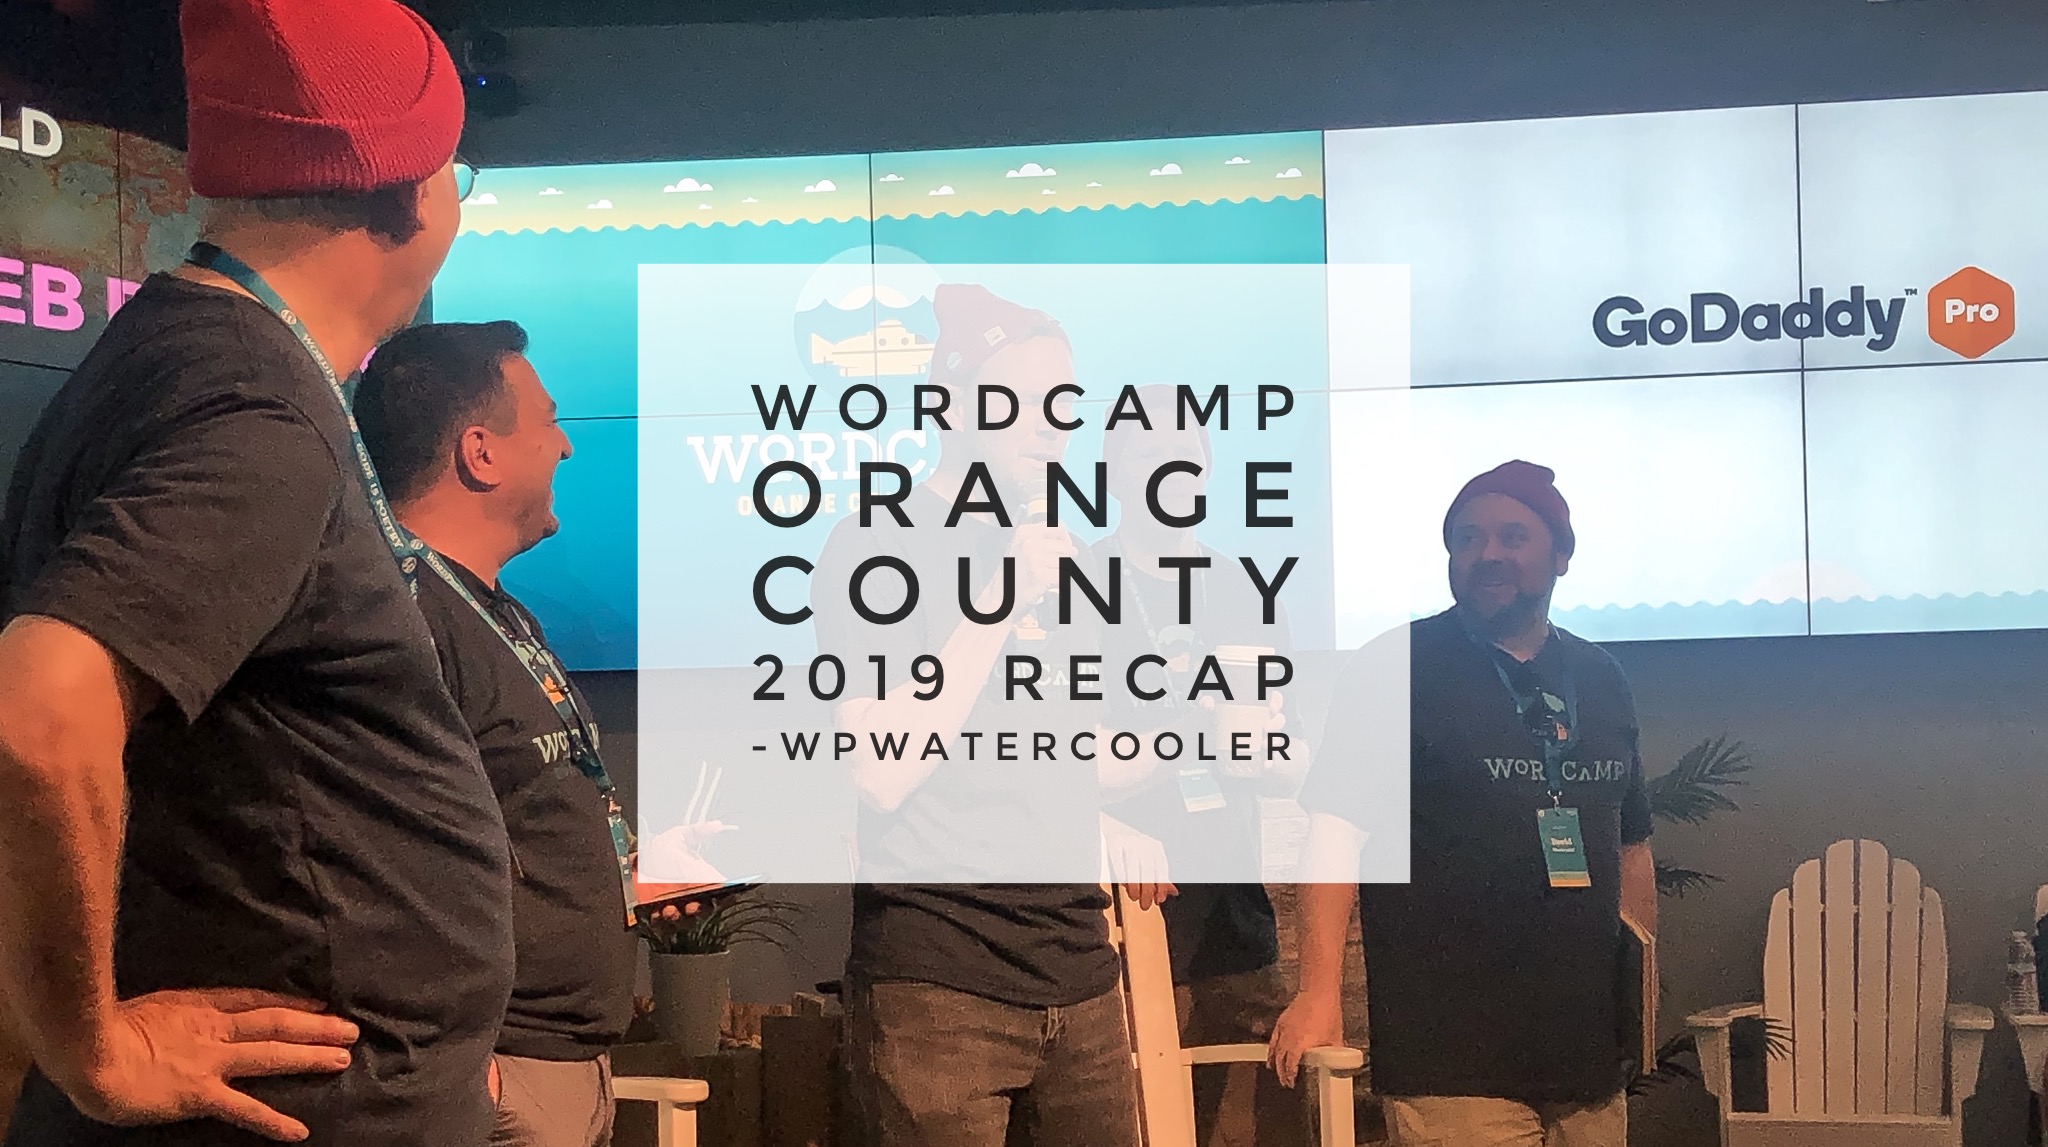 EP320 - WordCamp Orange County 2019 Recap #WCOC